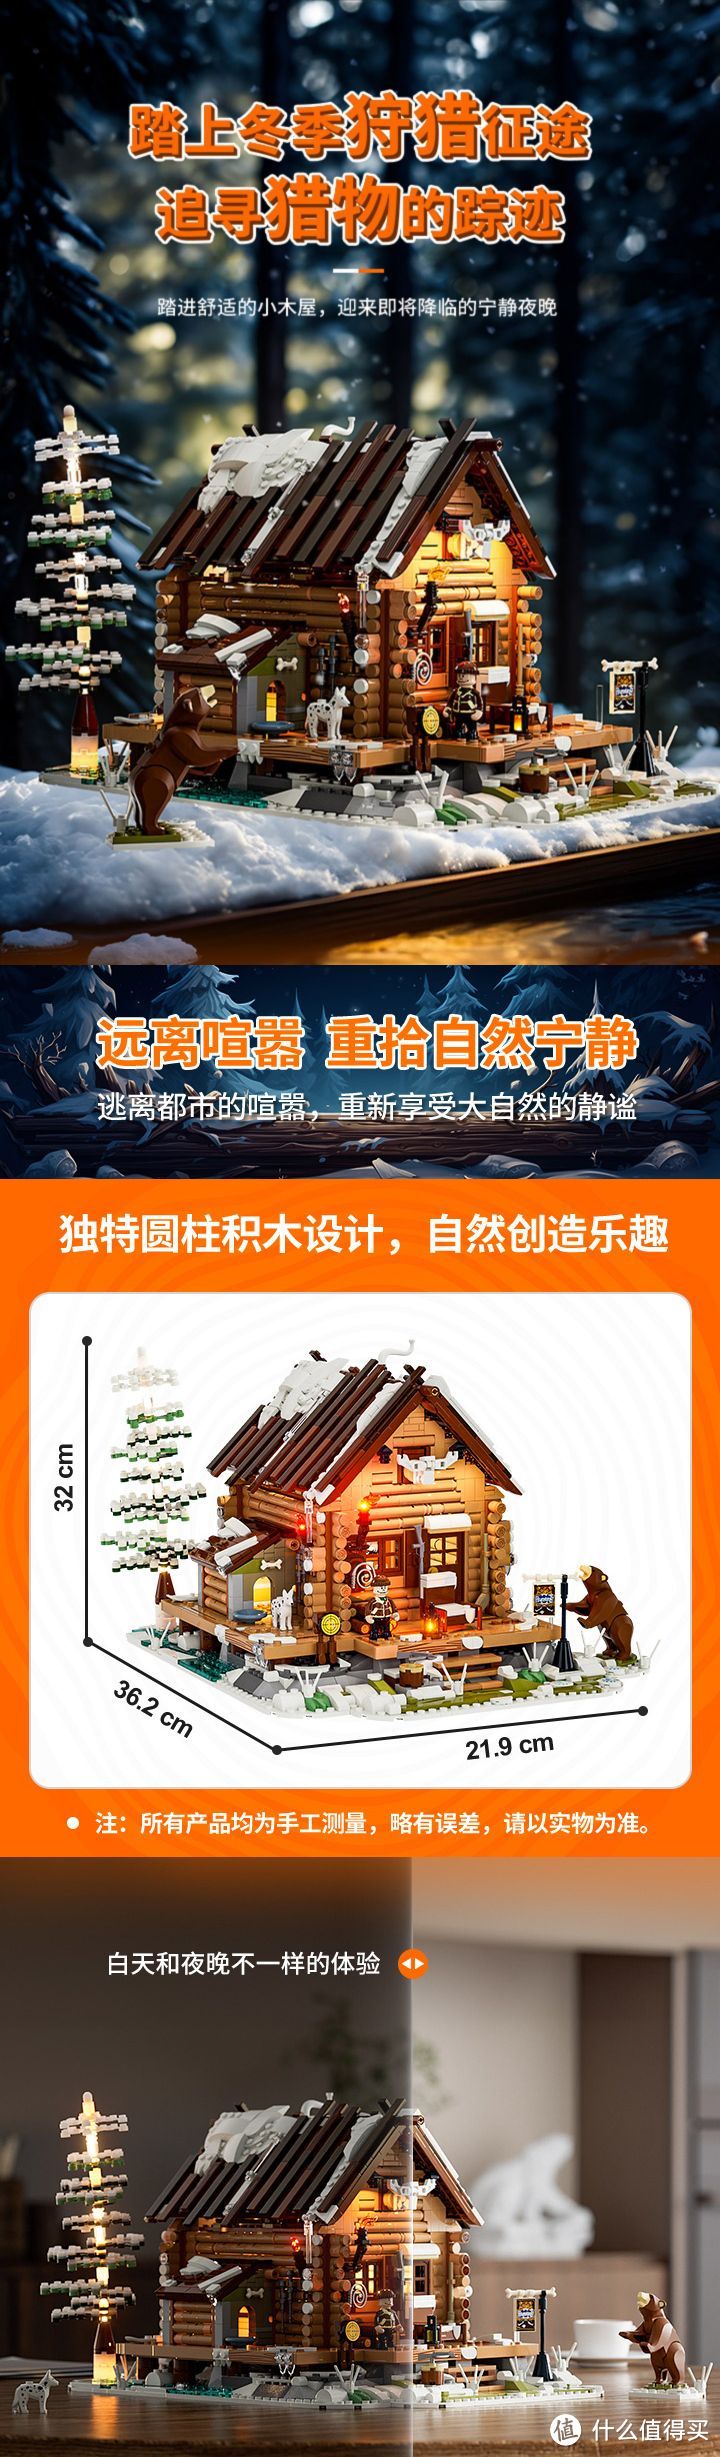 公认的中国积木灯光天花板之一，渲染图片也非常天花板，希望保持